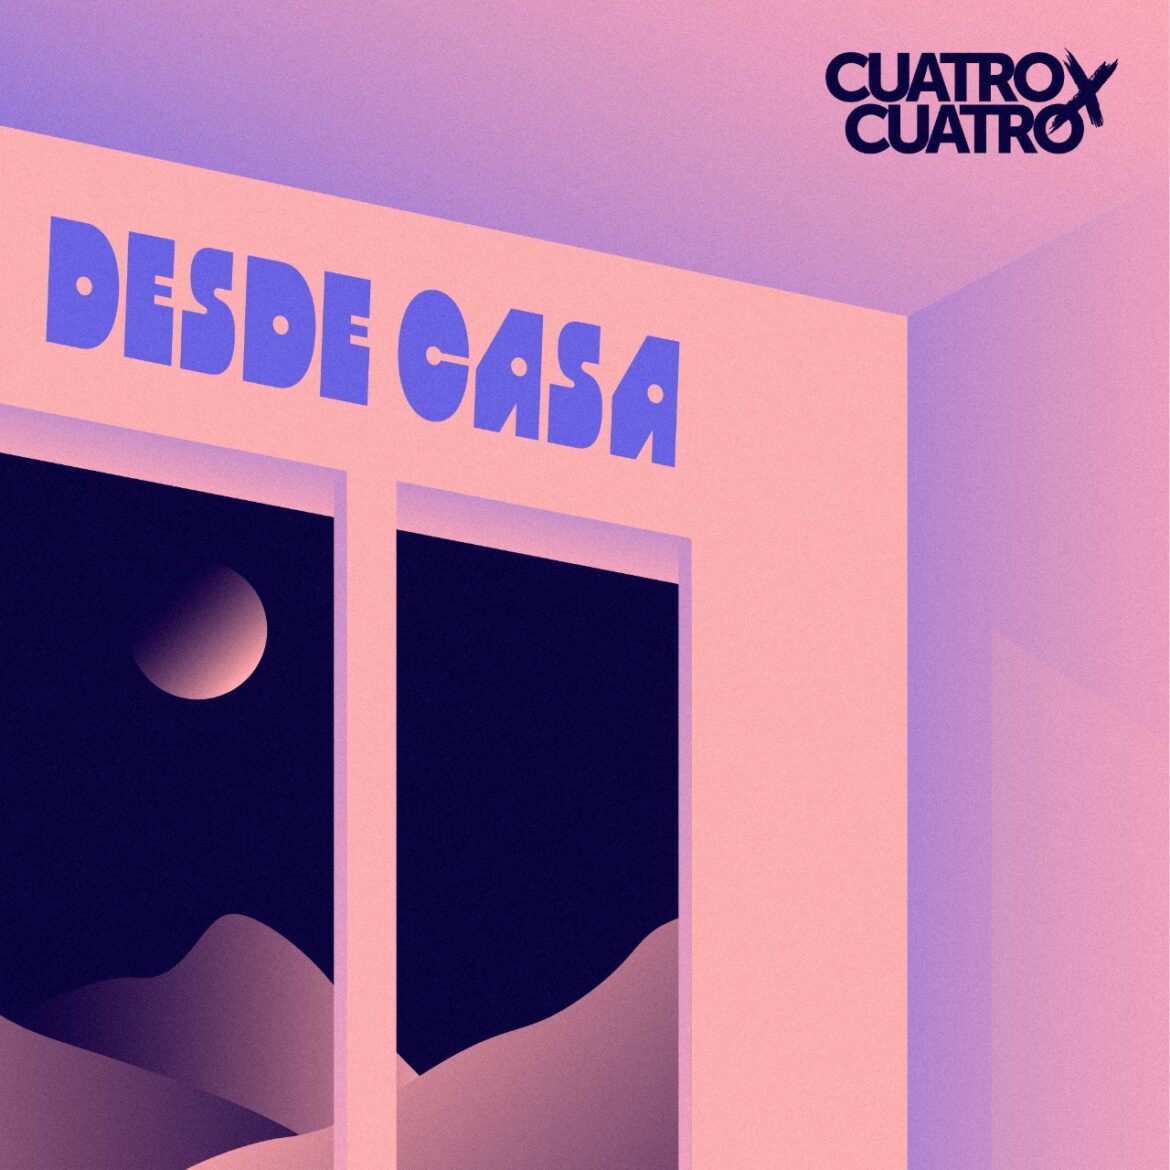 La banda colombiana Cuatro x Cuatro estrena su EP ‘Desde casa’